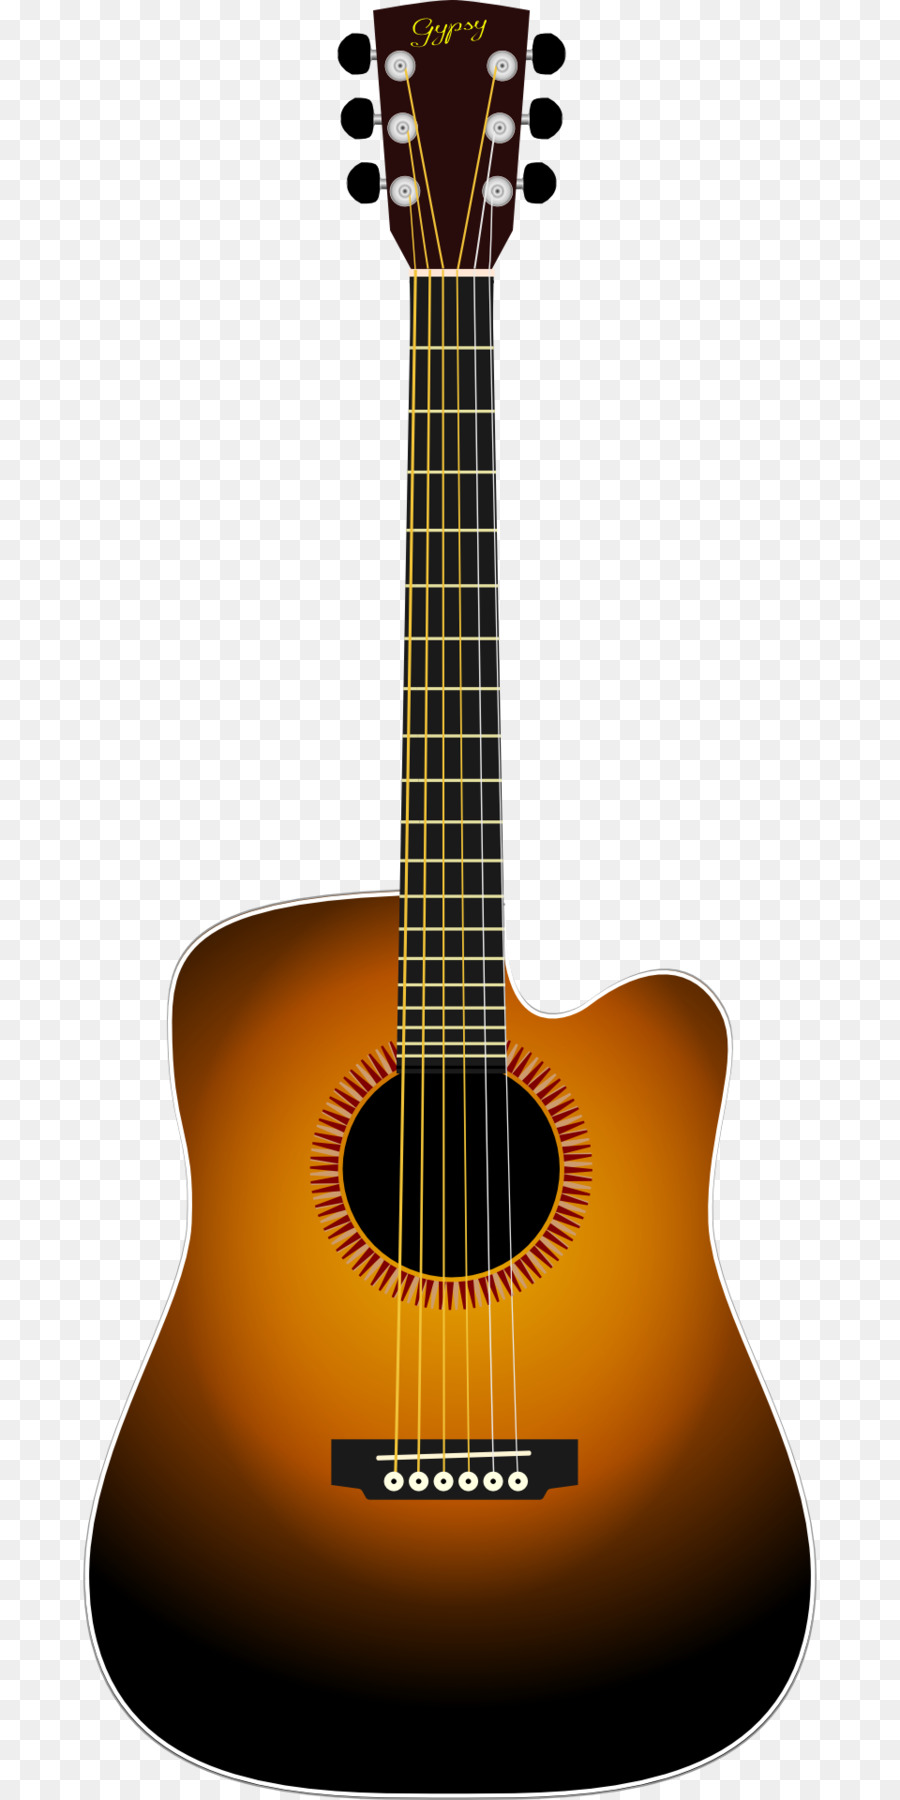 Gibson Flying V Ukulele Guitar Clip art.